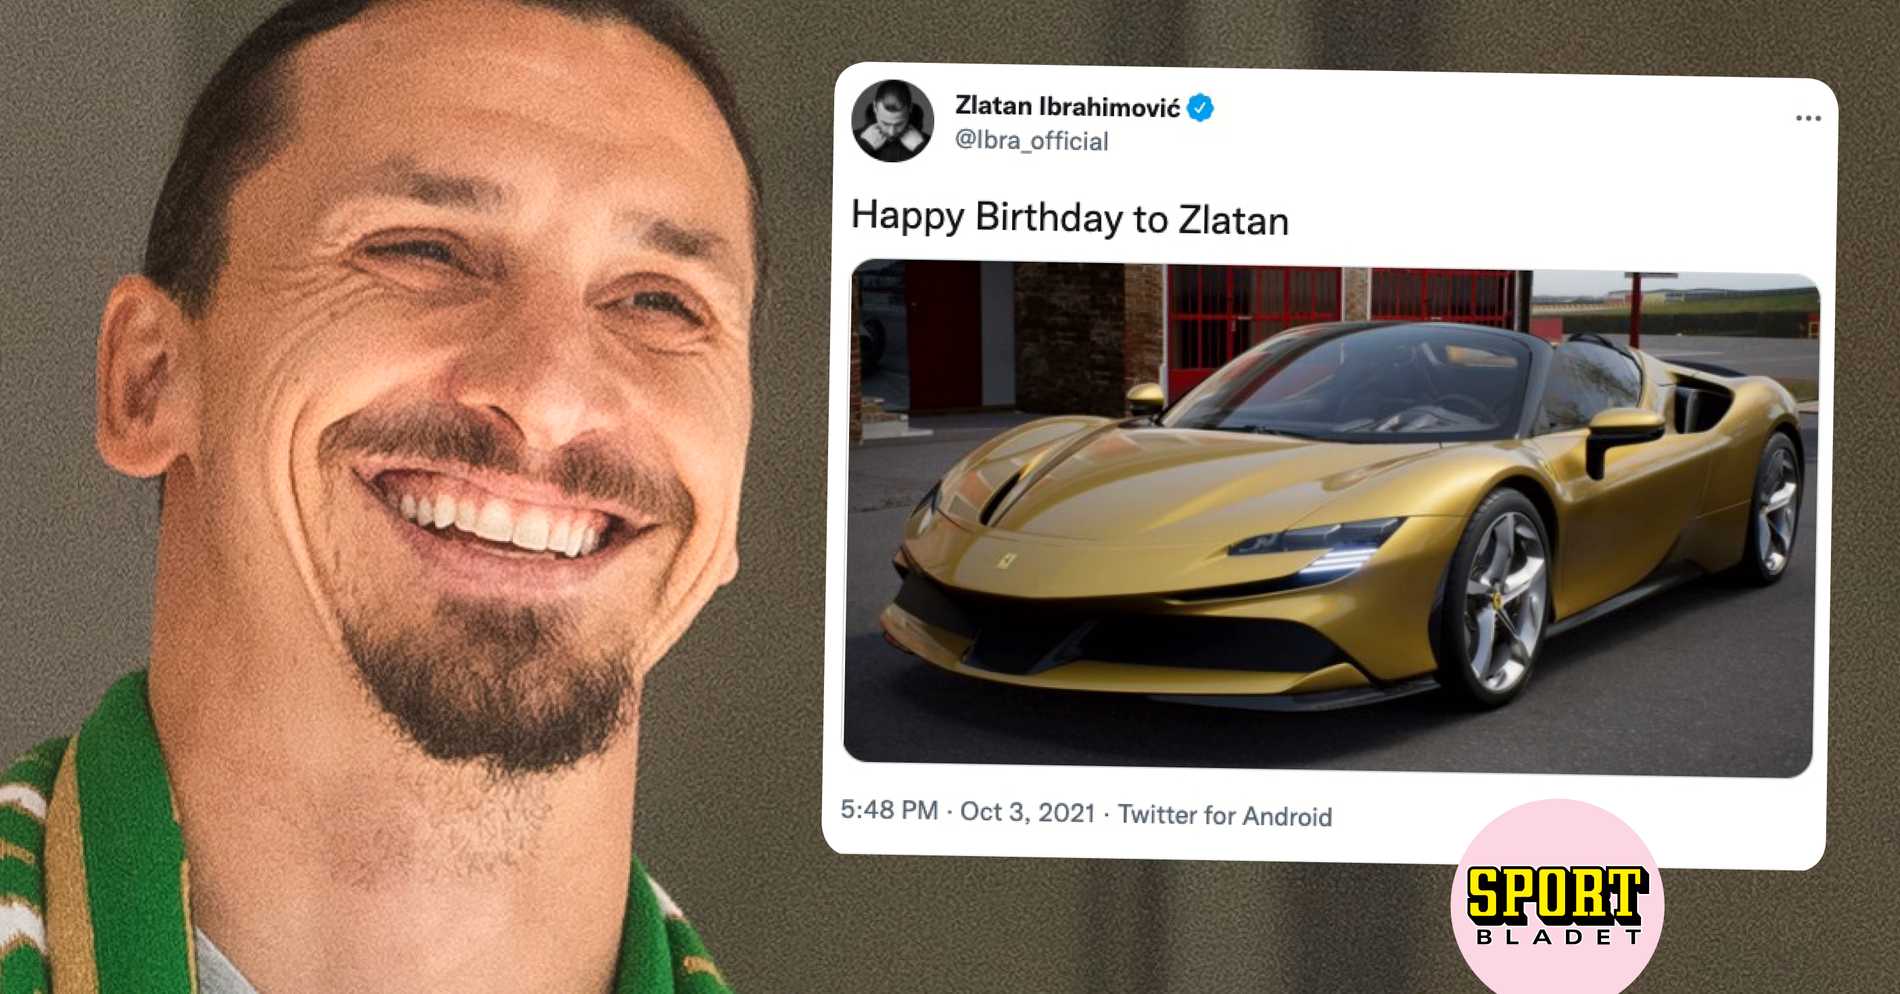 За 40-oт роденден, Ибрахимович си се почасти со ново Ferrari / ФОТО